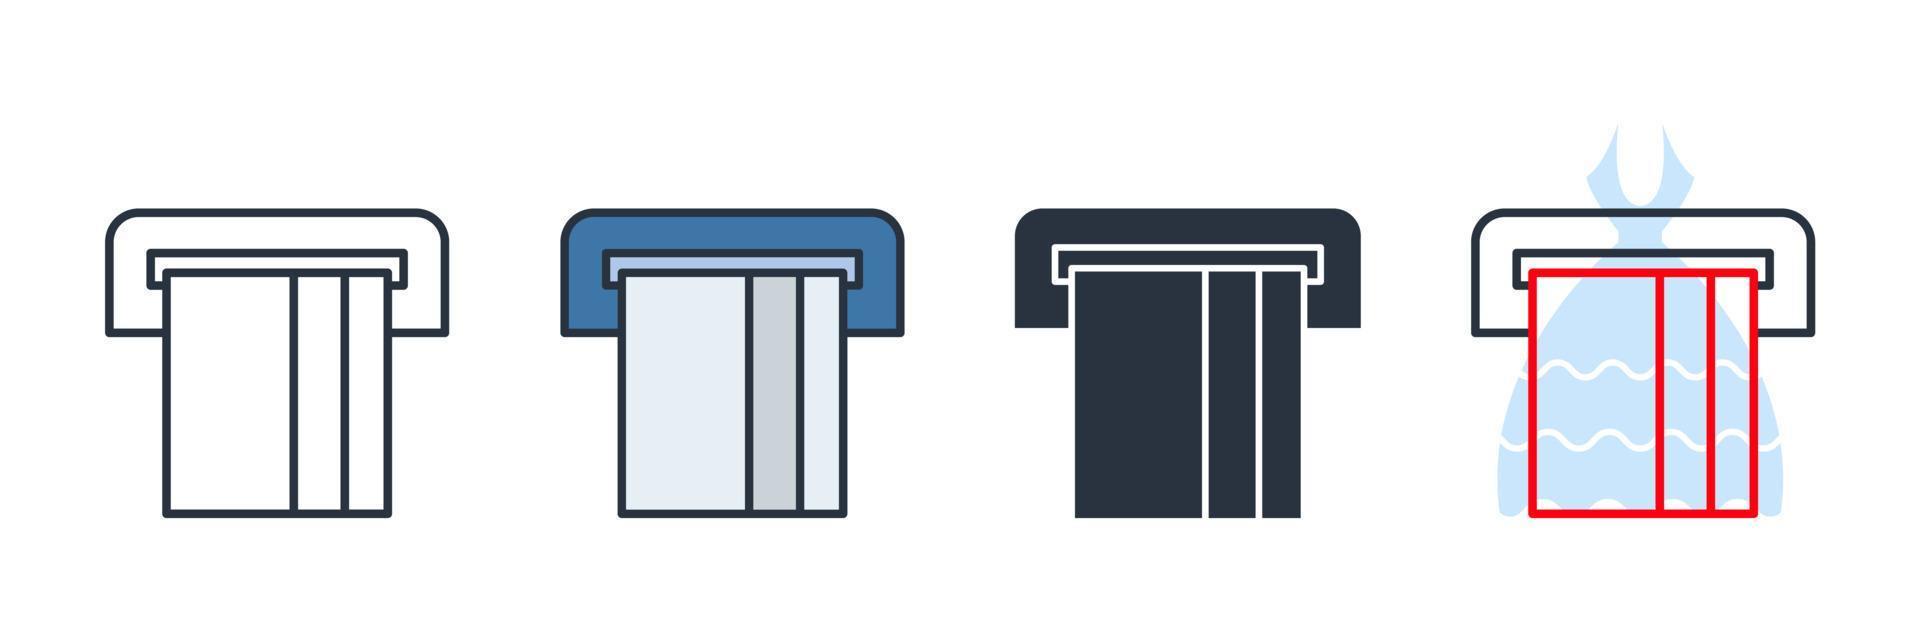 ATM-Symbol-Logo-Vektor-Illustration. Kreditkarte, die aus der atm-Symbolvorlage für Grafik- und Webdesign-Sammlung herausrutscht vektor